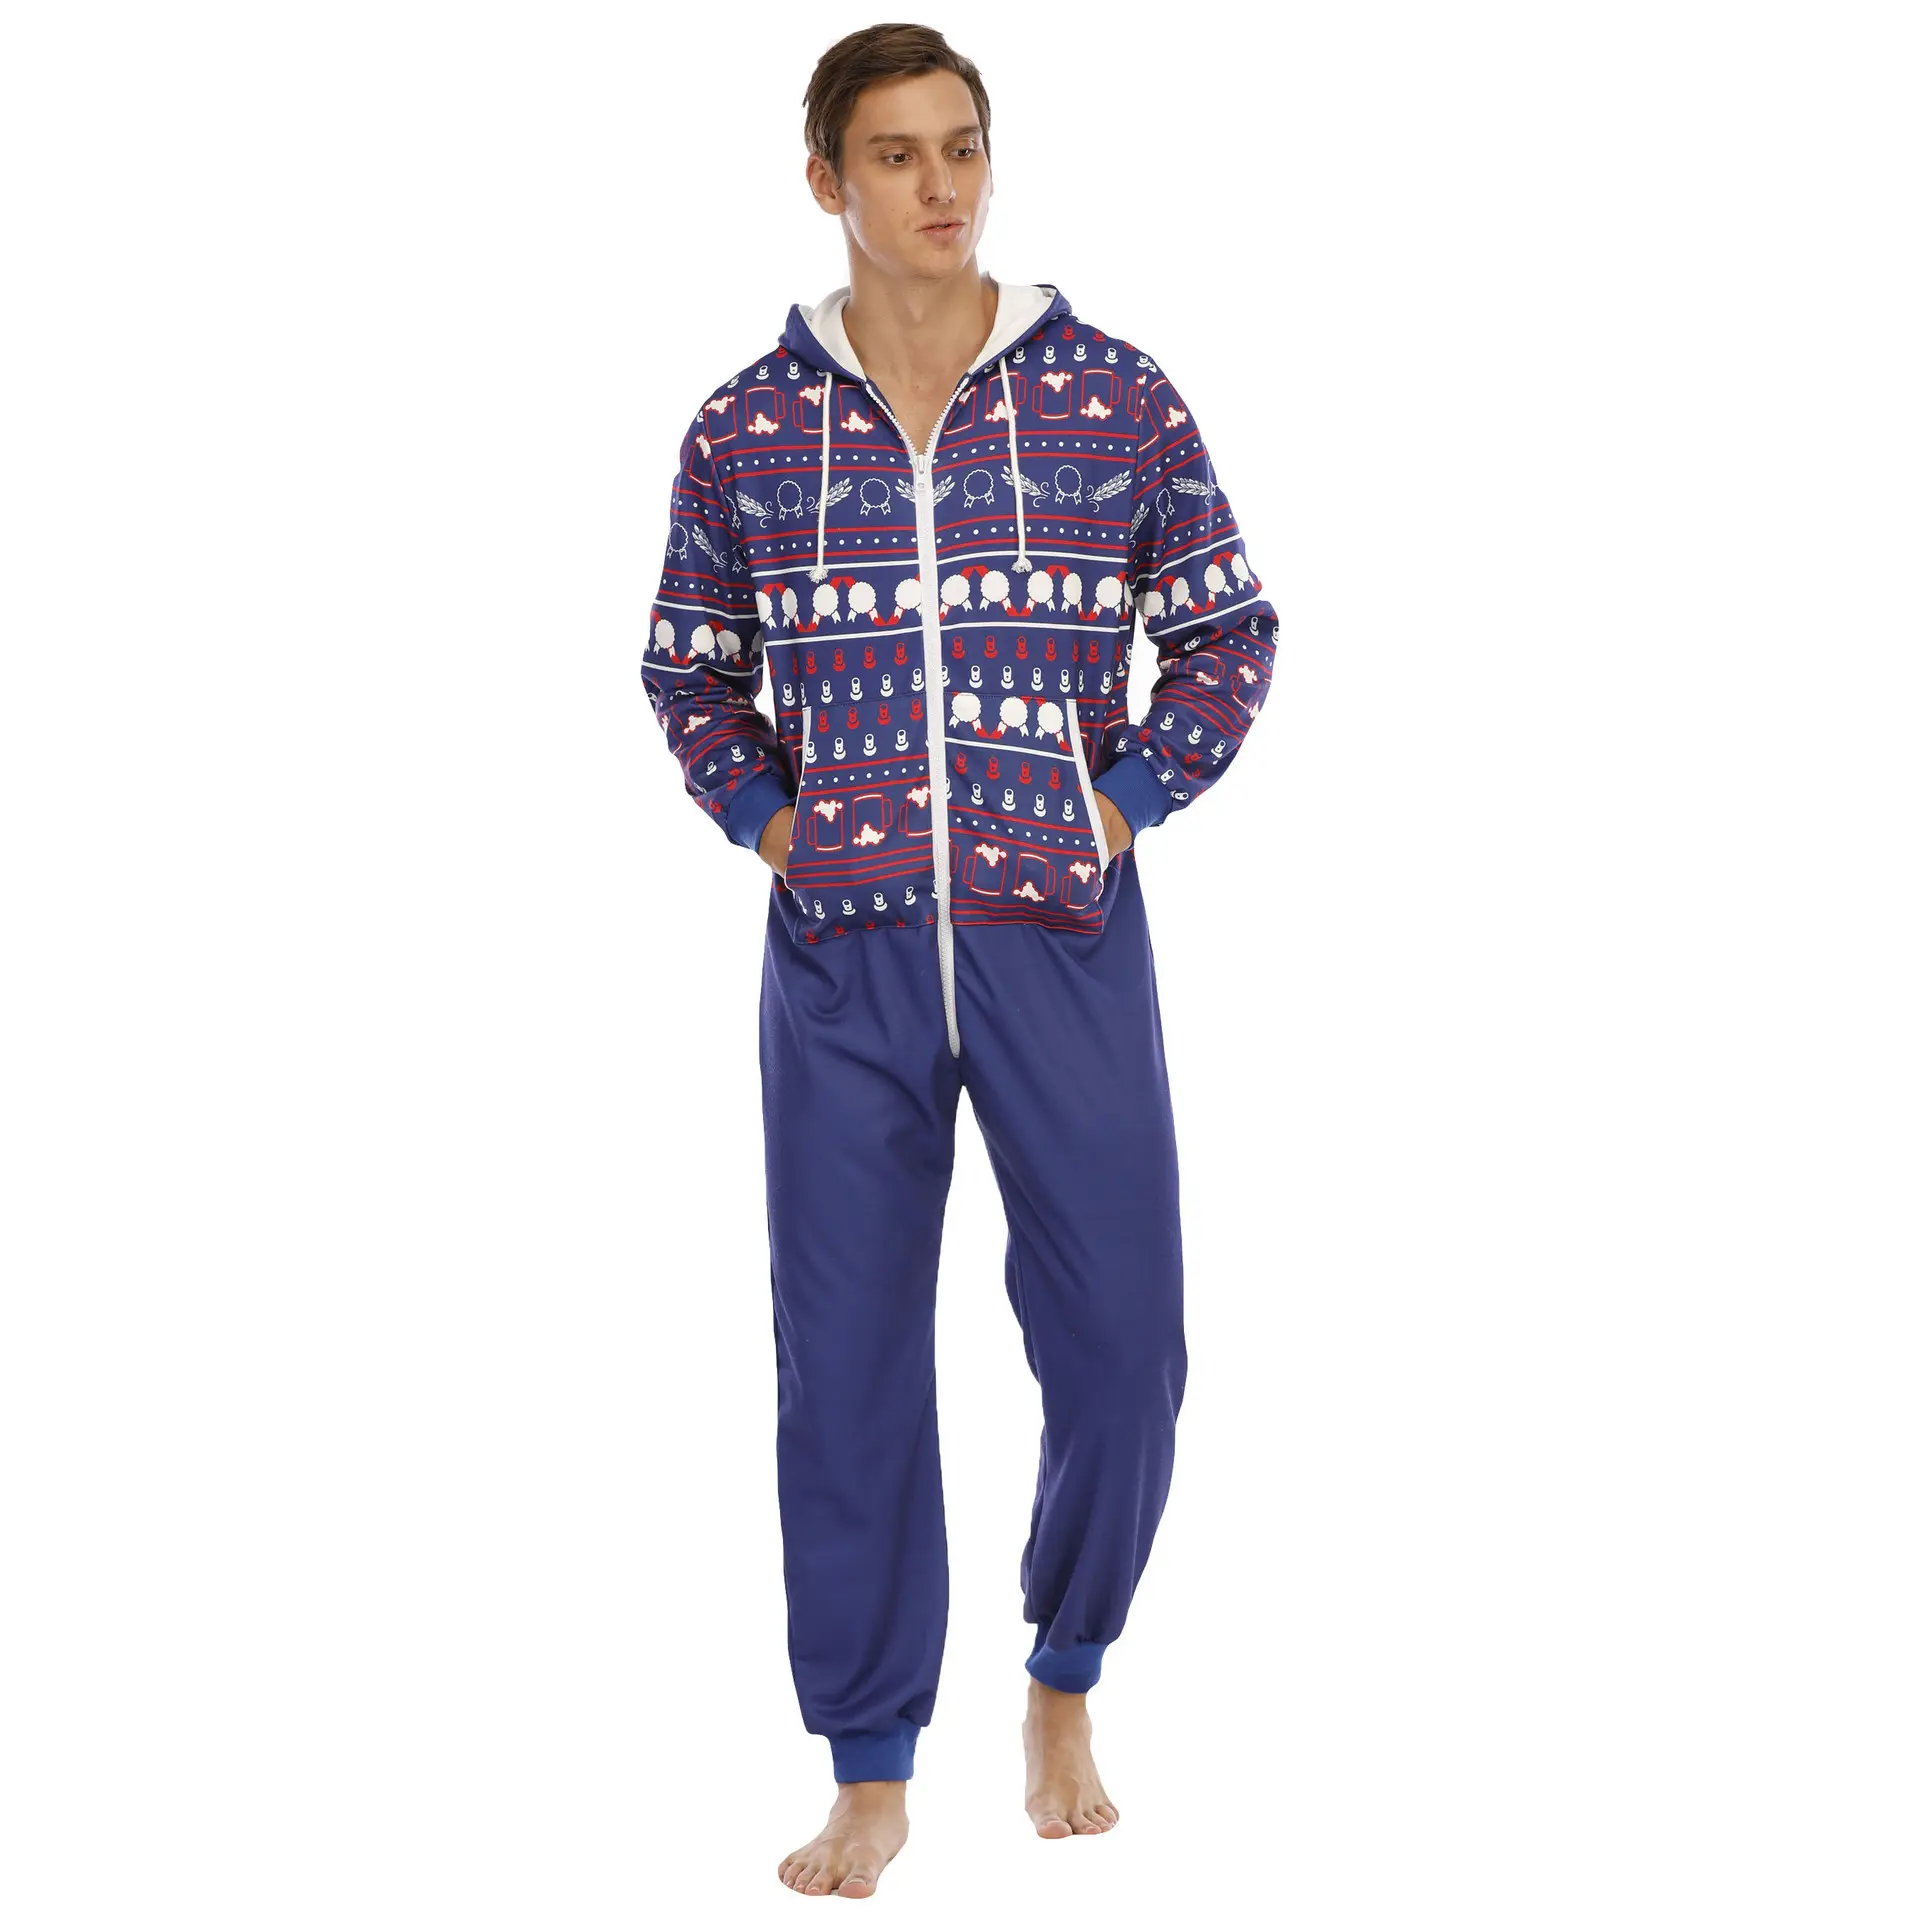 Onesie, pijama masculino de pelúcia, de alta qualidade, camisola com capuz, roupa de dormir confortável